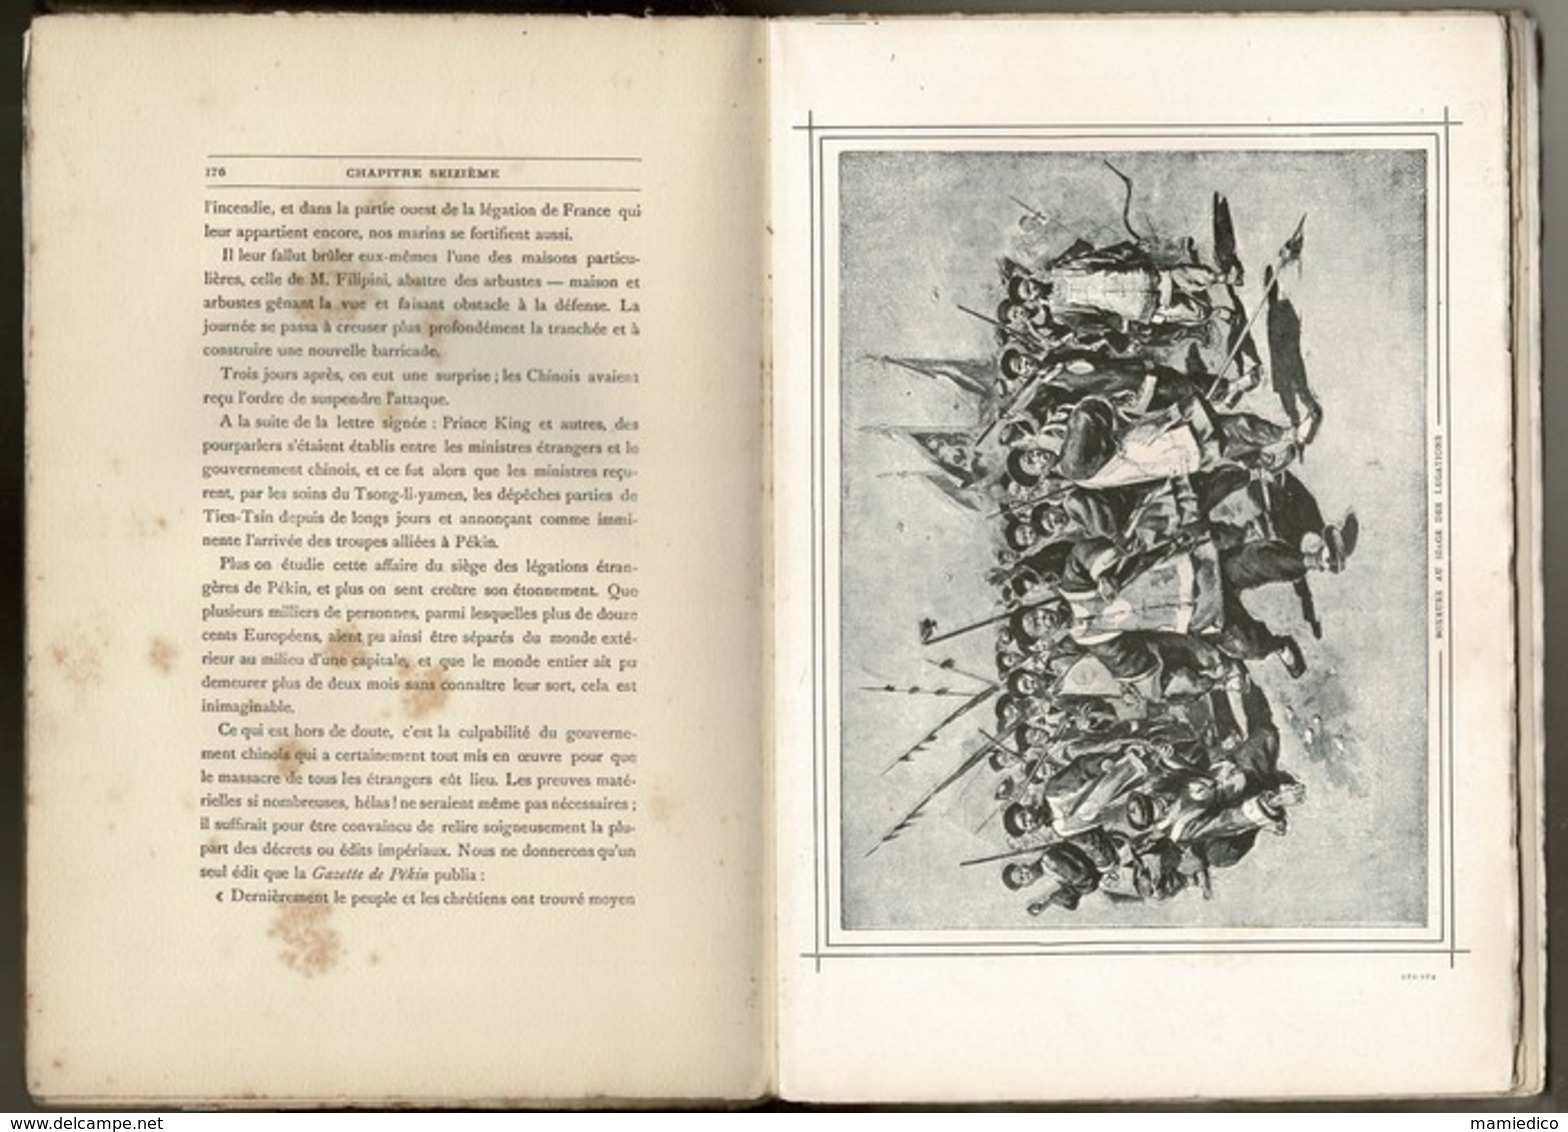 Livre de 292 pages  HISTOIRE: "LE DRAME DE PEKIN EN 1900" Nombreuses gravures. Vendu en l'état avec salissures